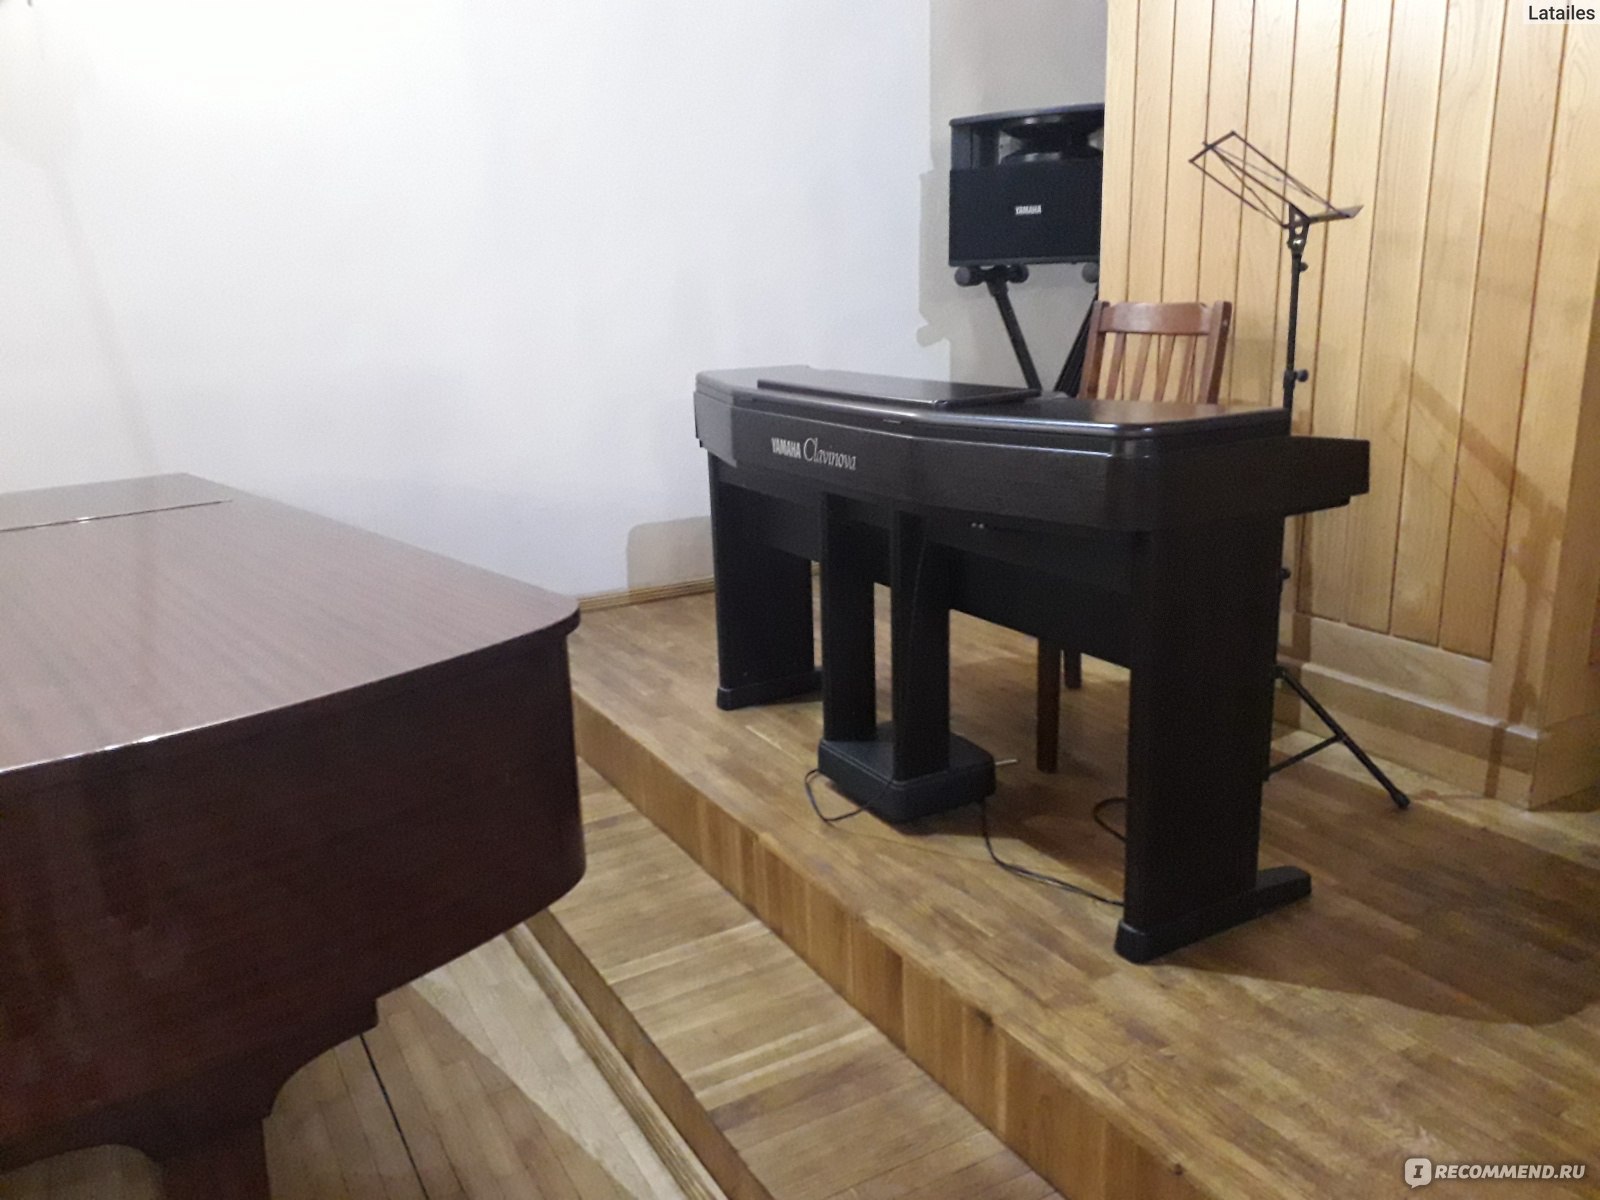 Органный зал Макаров, Светлогорск, Калининградская область фото